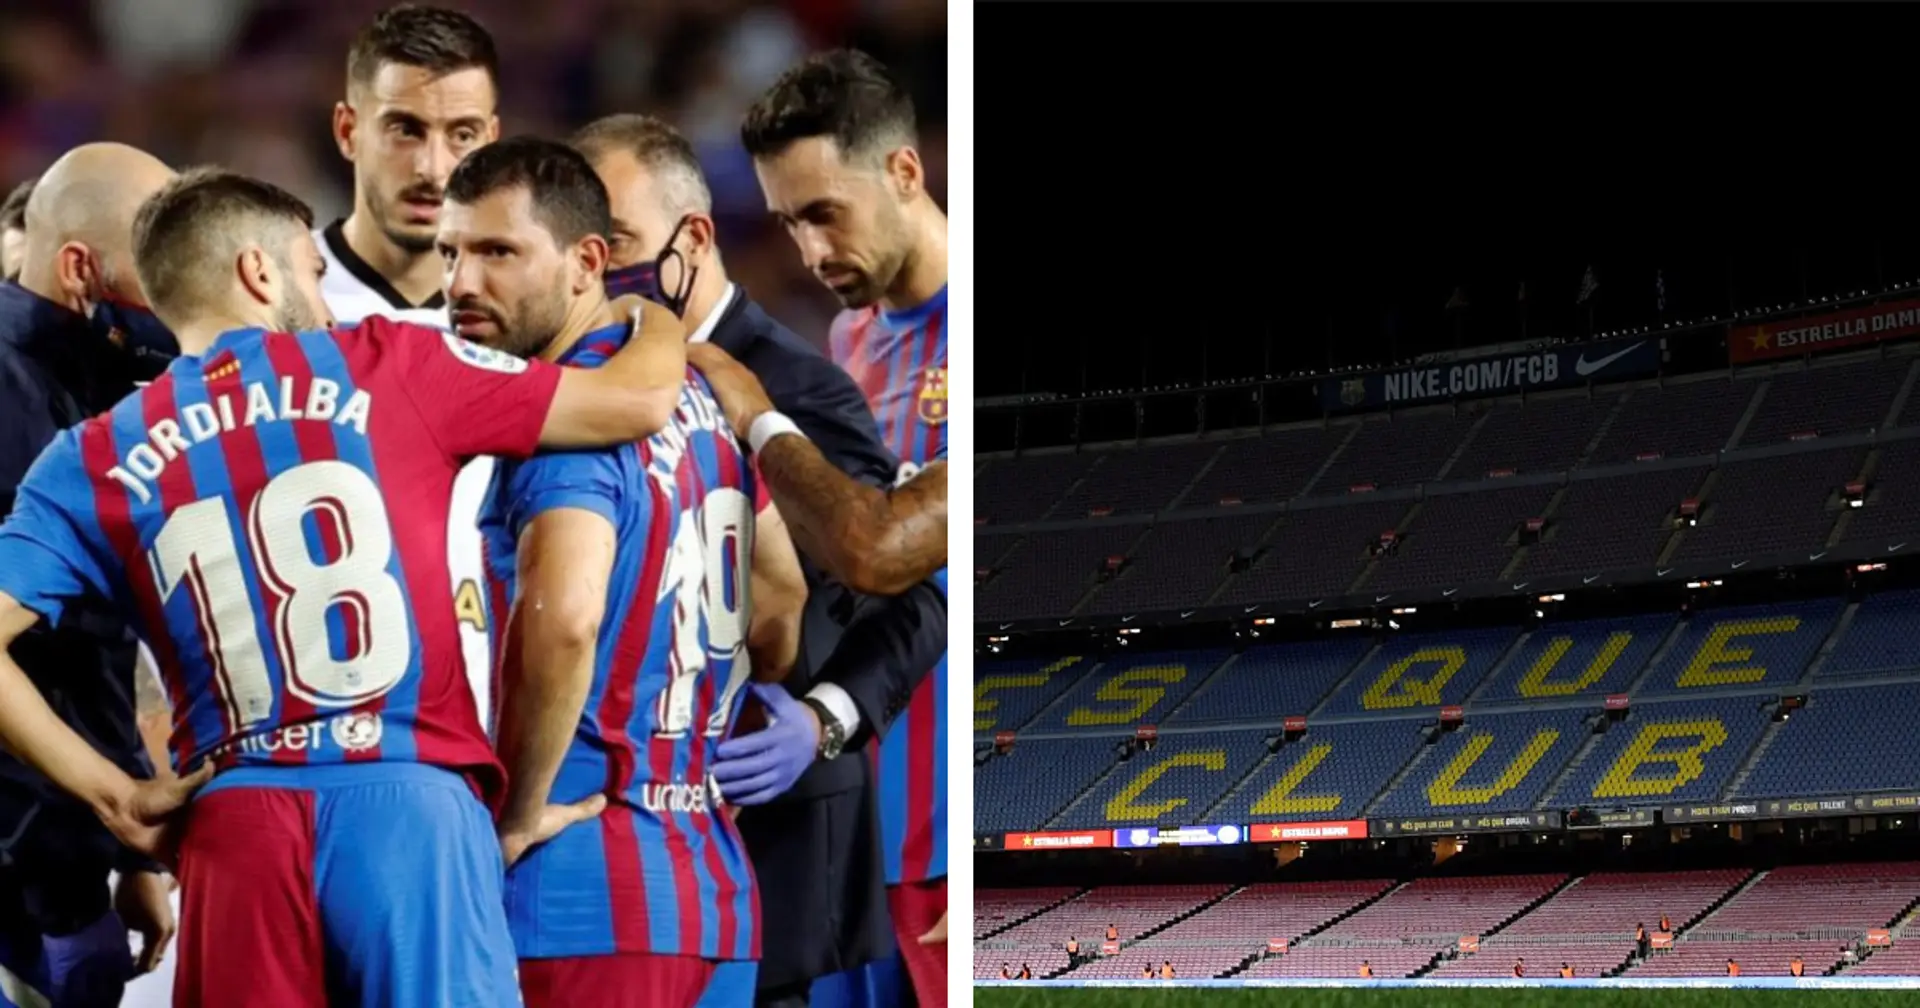 No Messi, no Party: Barcelona füllt nur 1/3 der Camp-Nou-Kapazität für LaLiga-Duell gegen Alaves